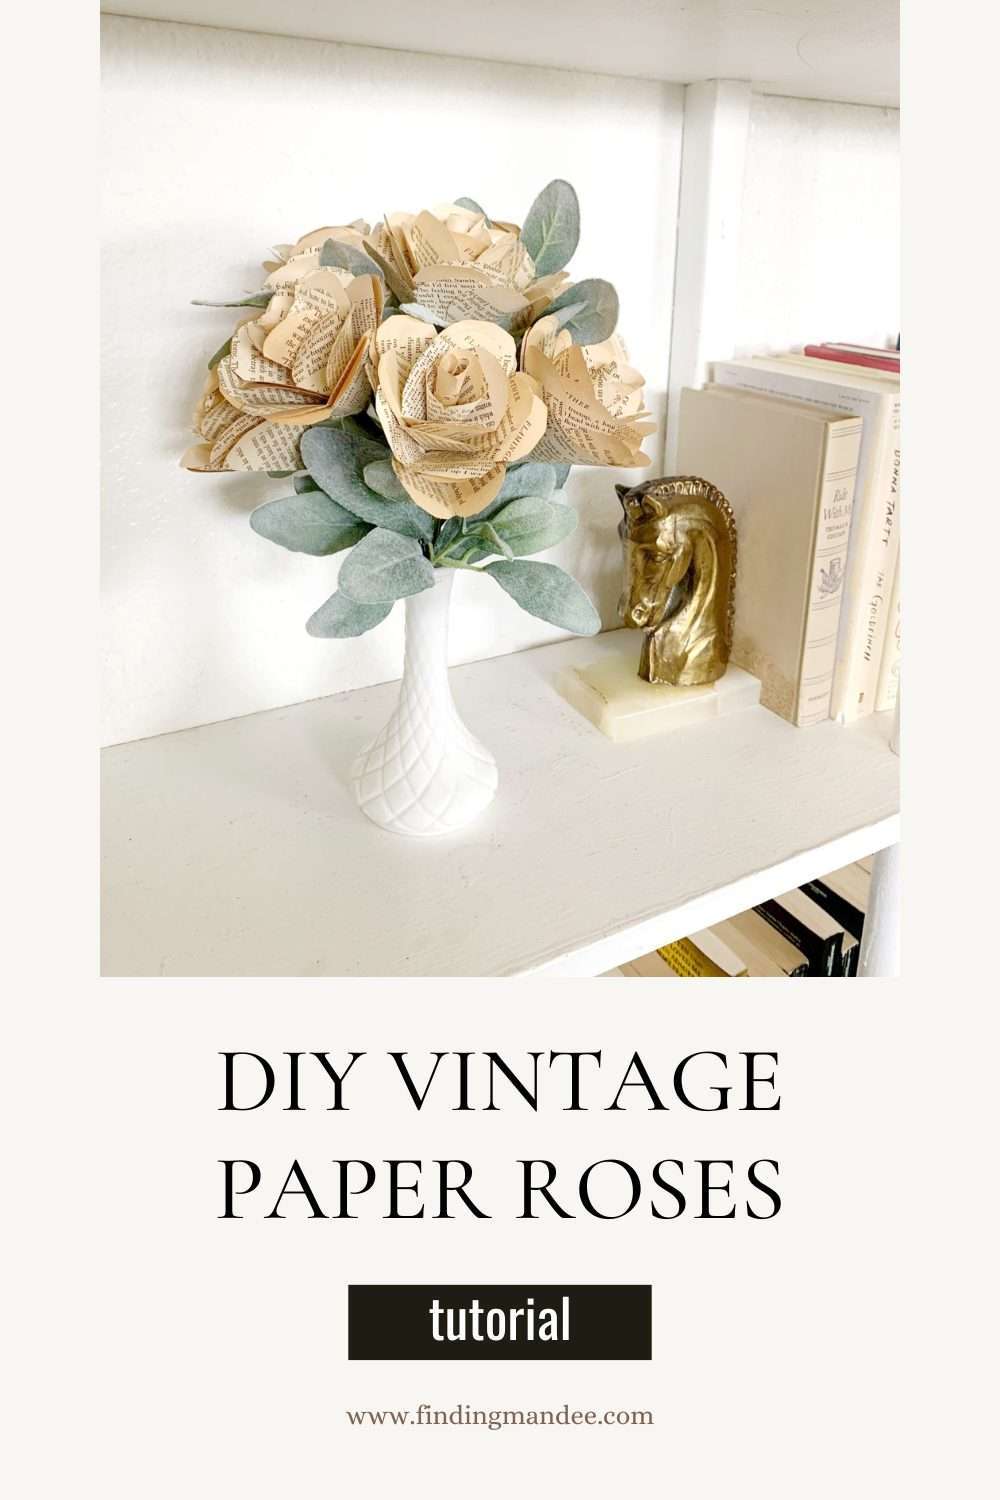 DIY Vintage Paper Roses | Finding Mandee